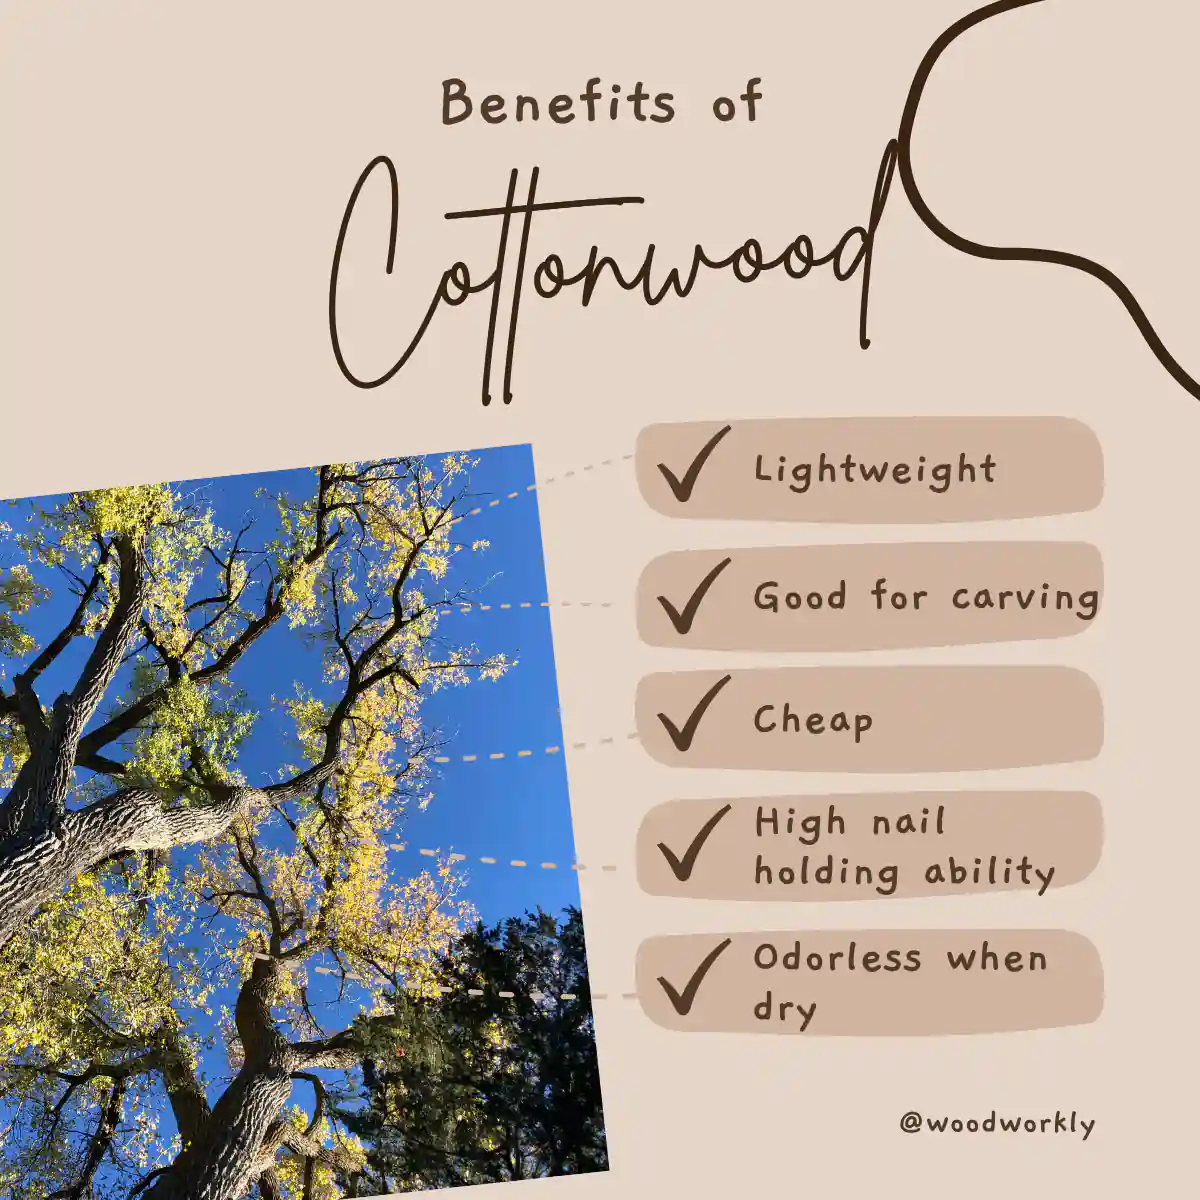 Benefits of cottonwood